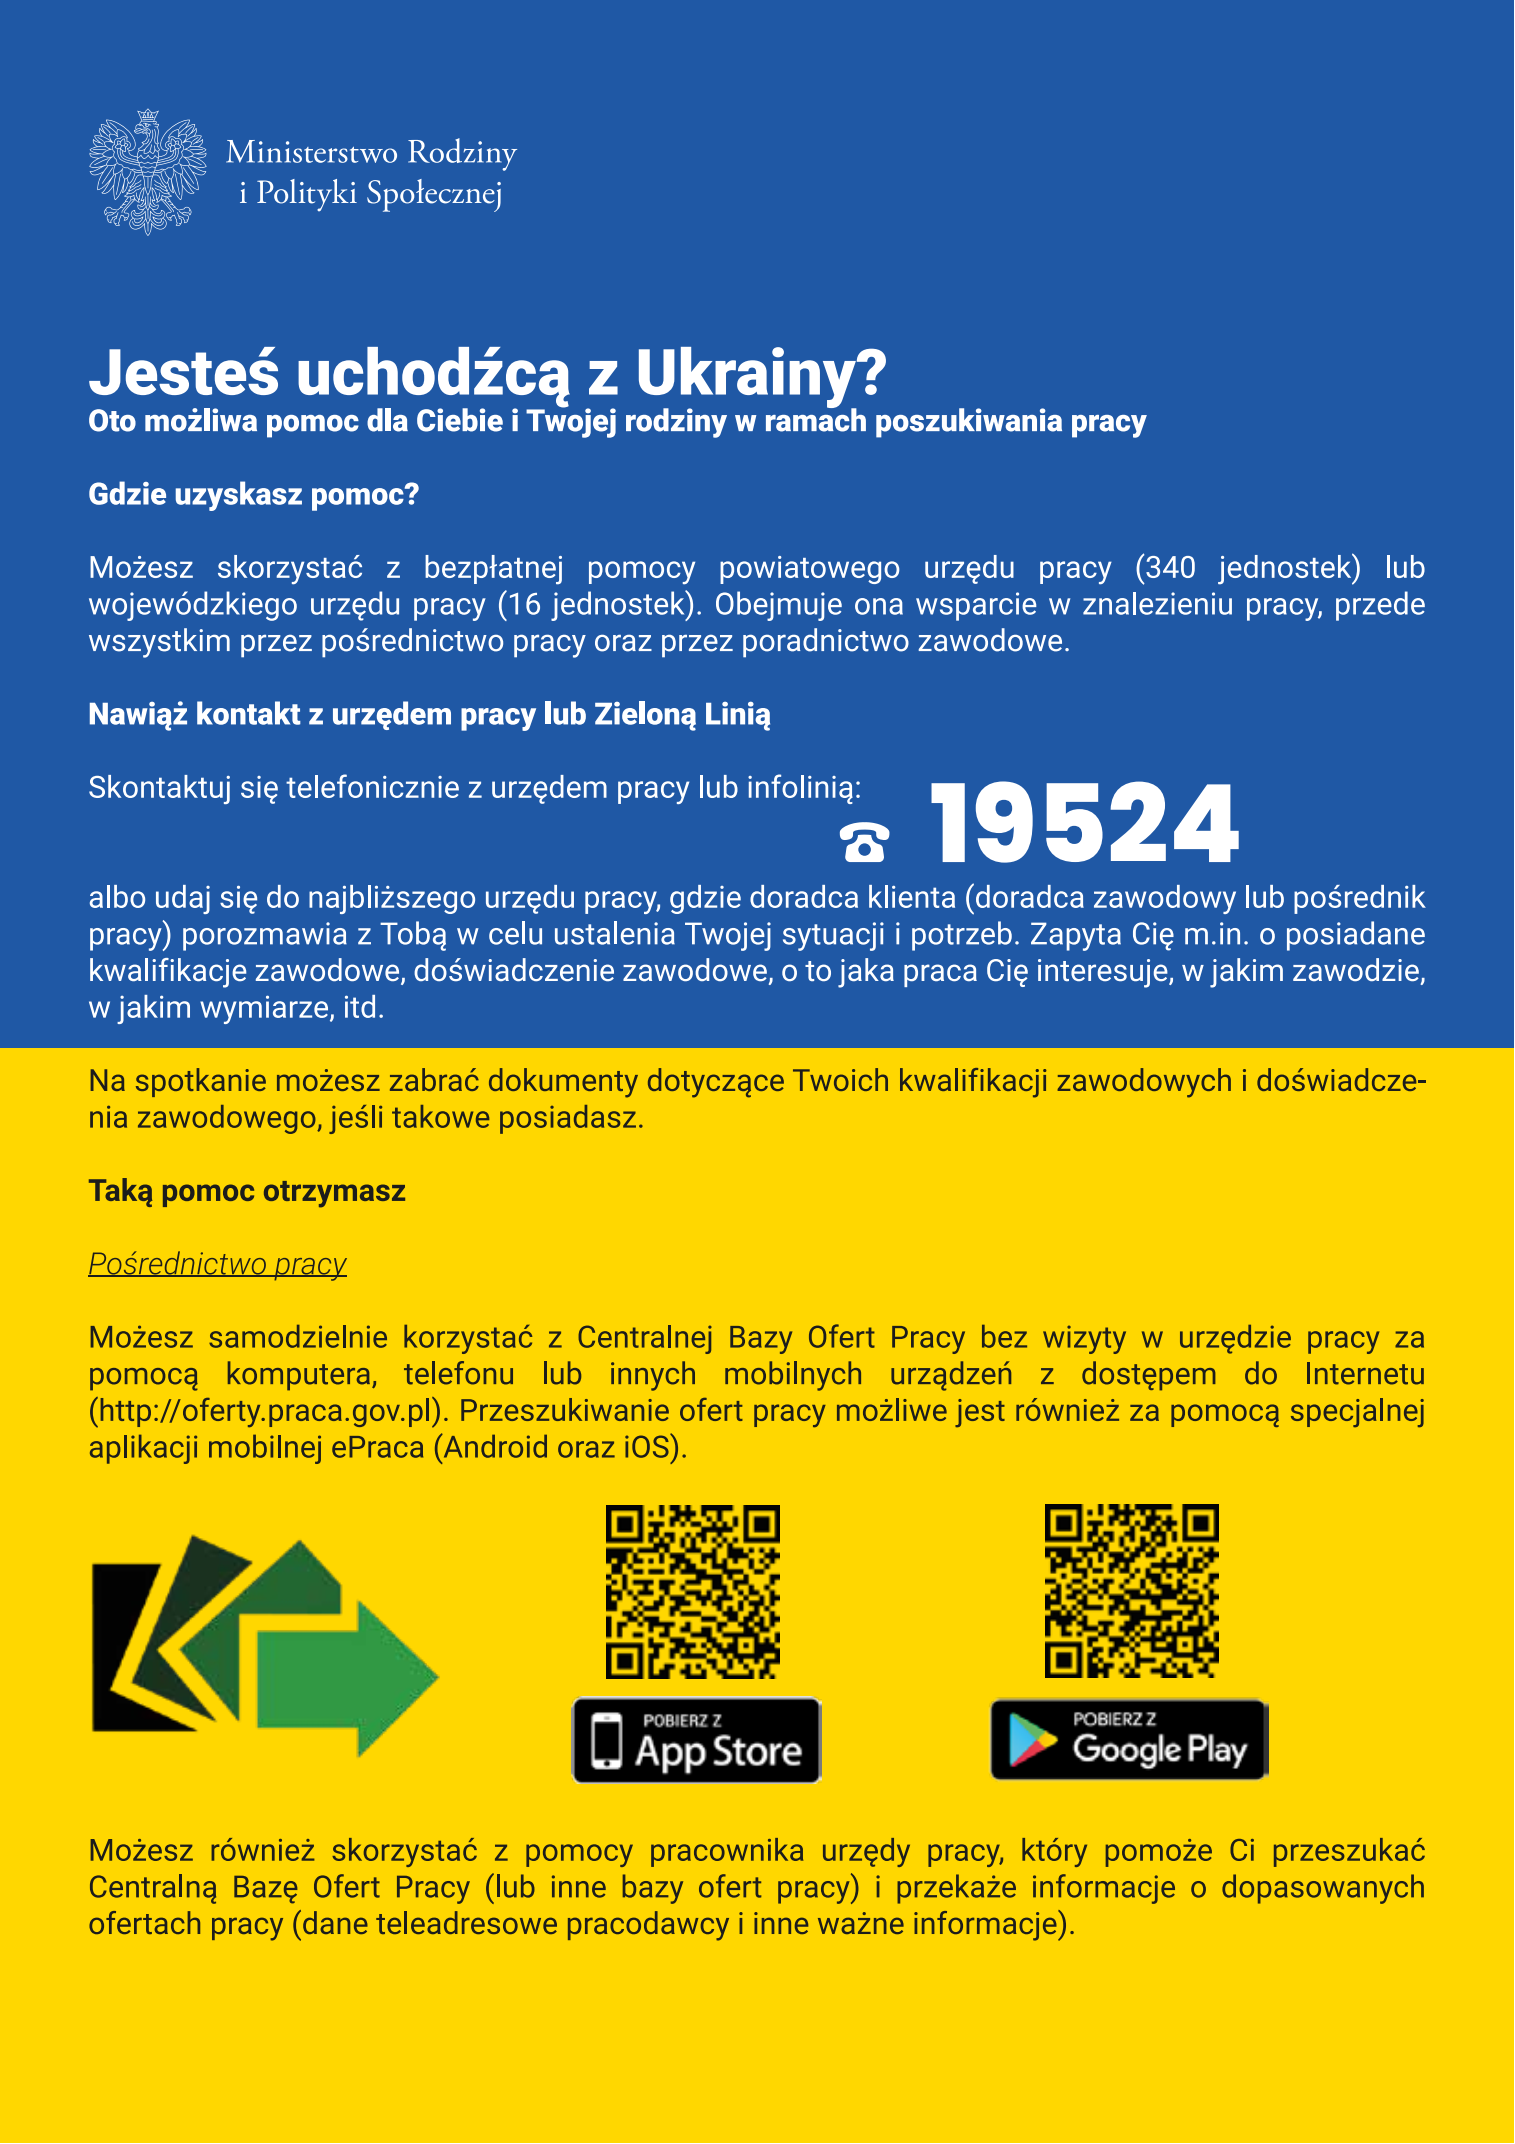 Pierwsza strona ulotki do obywateli Ukrainy w języku polskim.